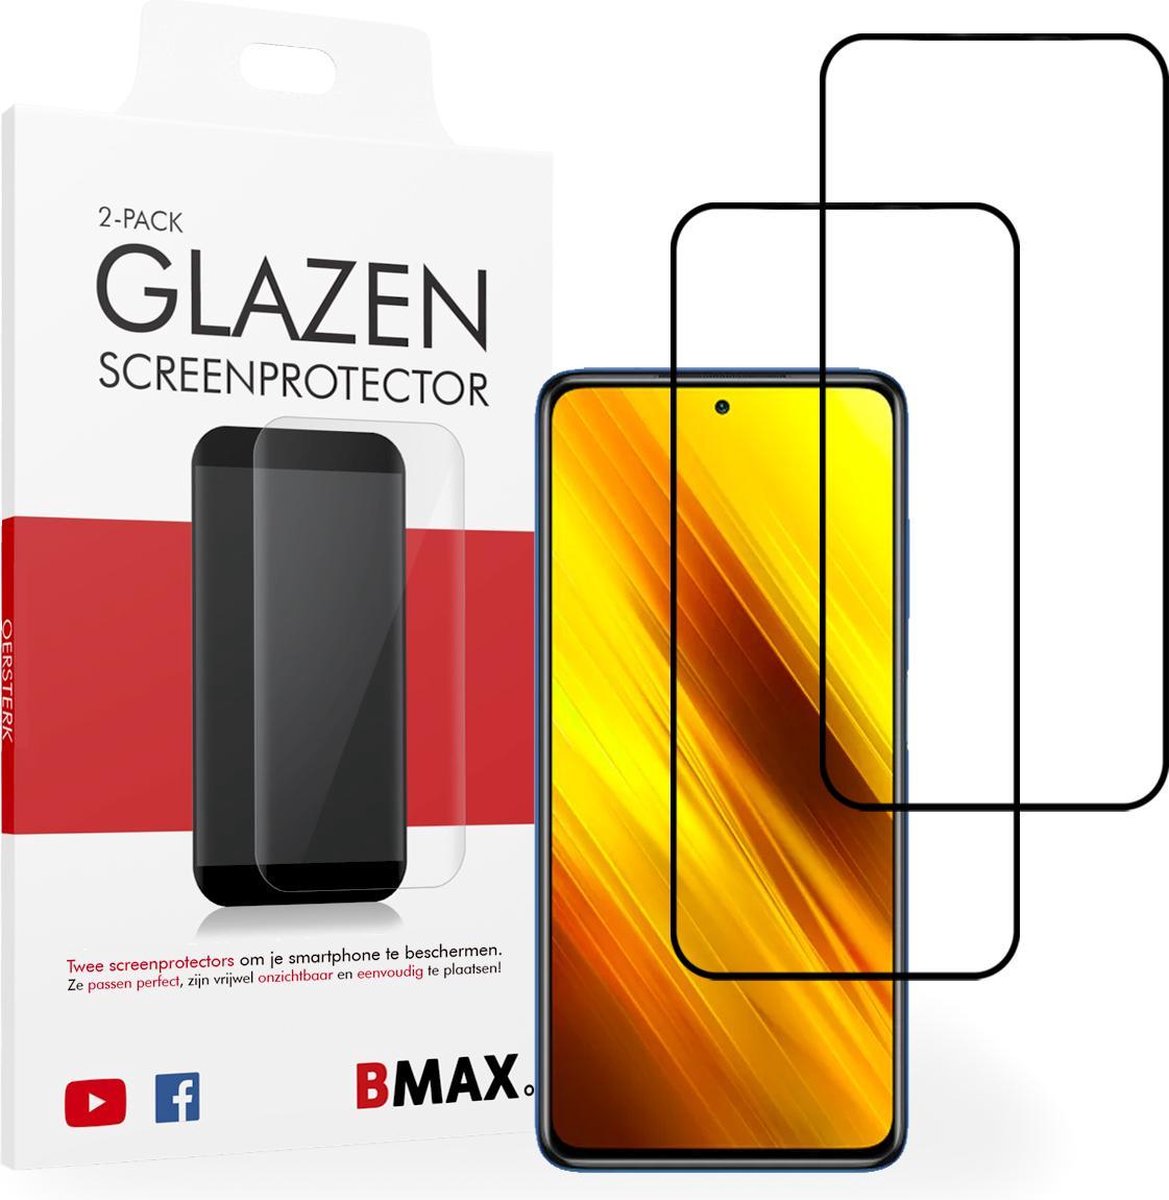 2-pack Bmax Xiaomi Poco X3 Screenprotector - Glass - Full Cover 2.5d - Black